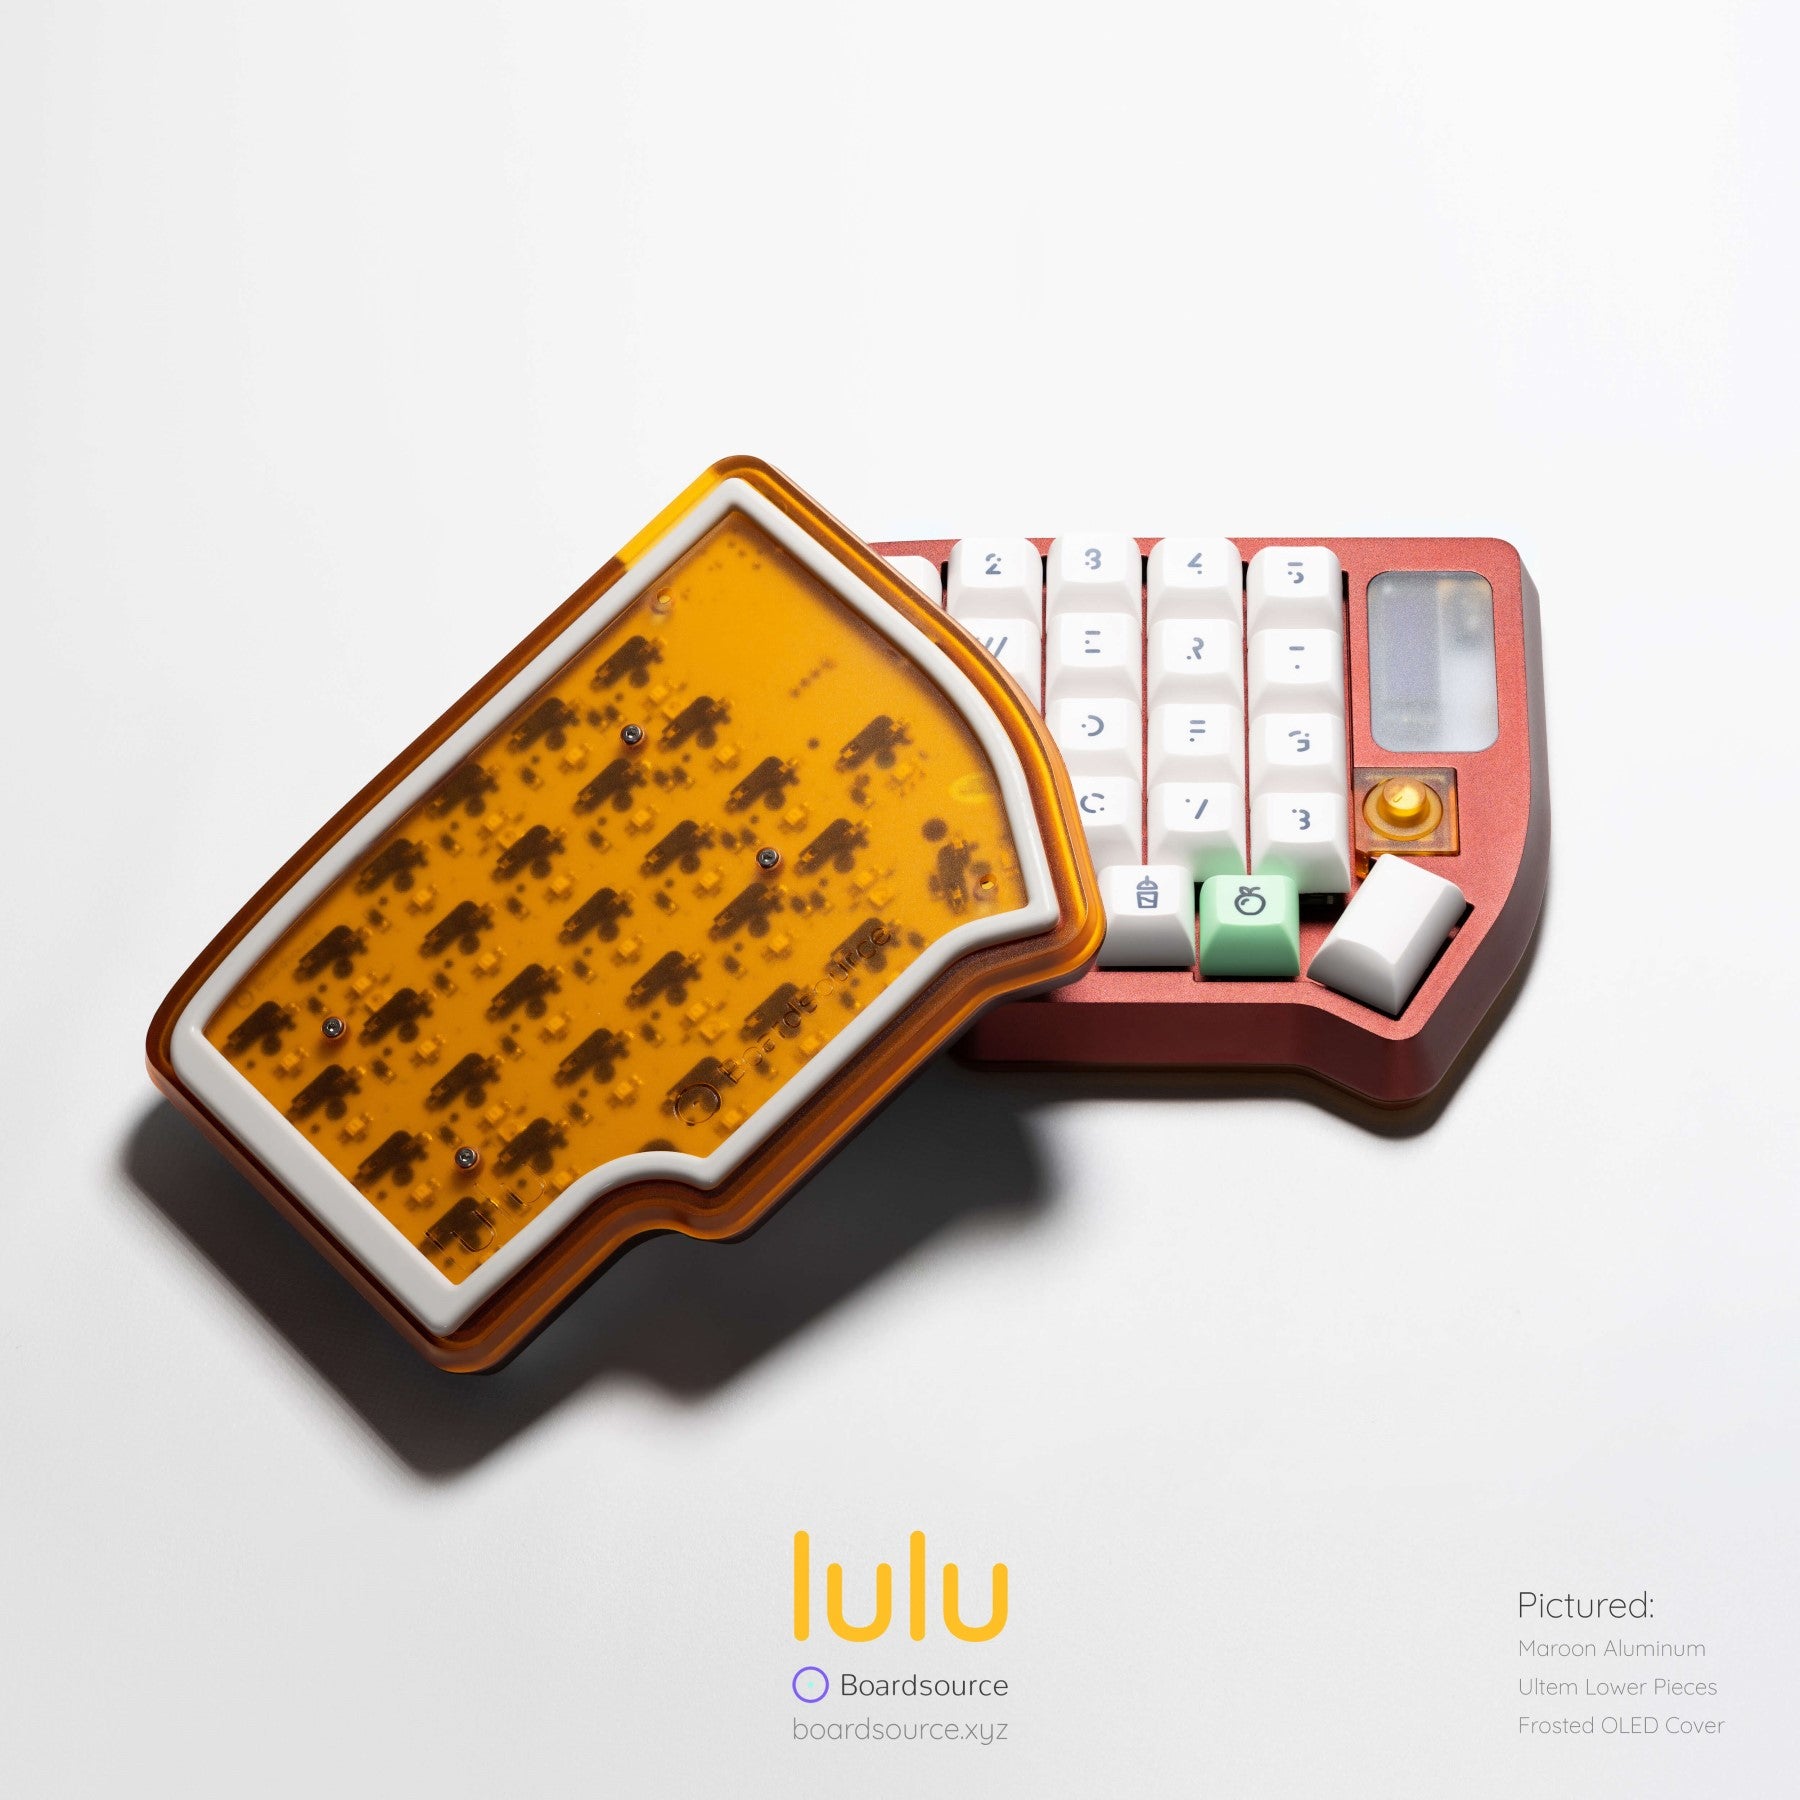 "lulu" by Boardsource